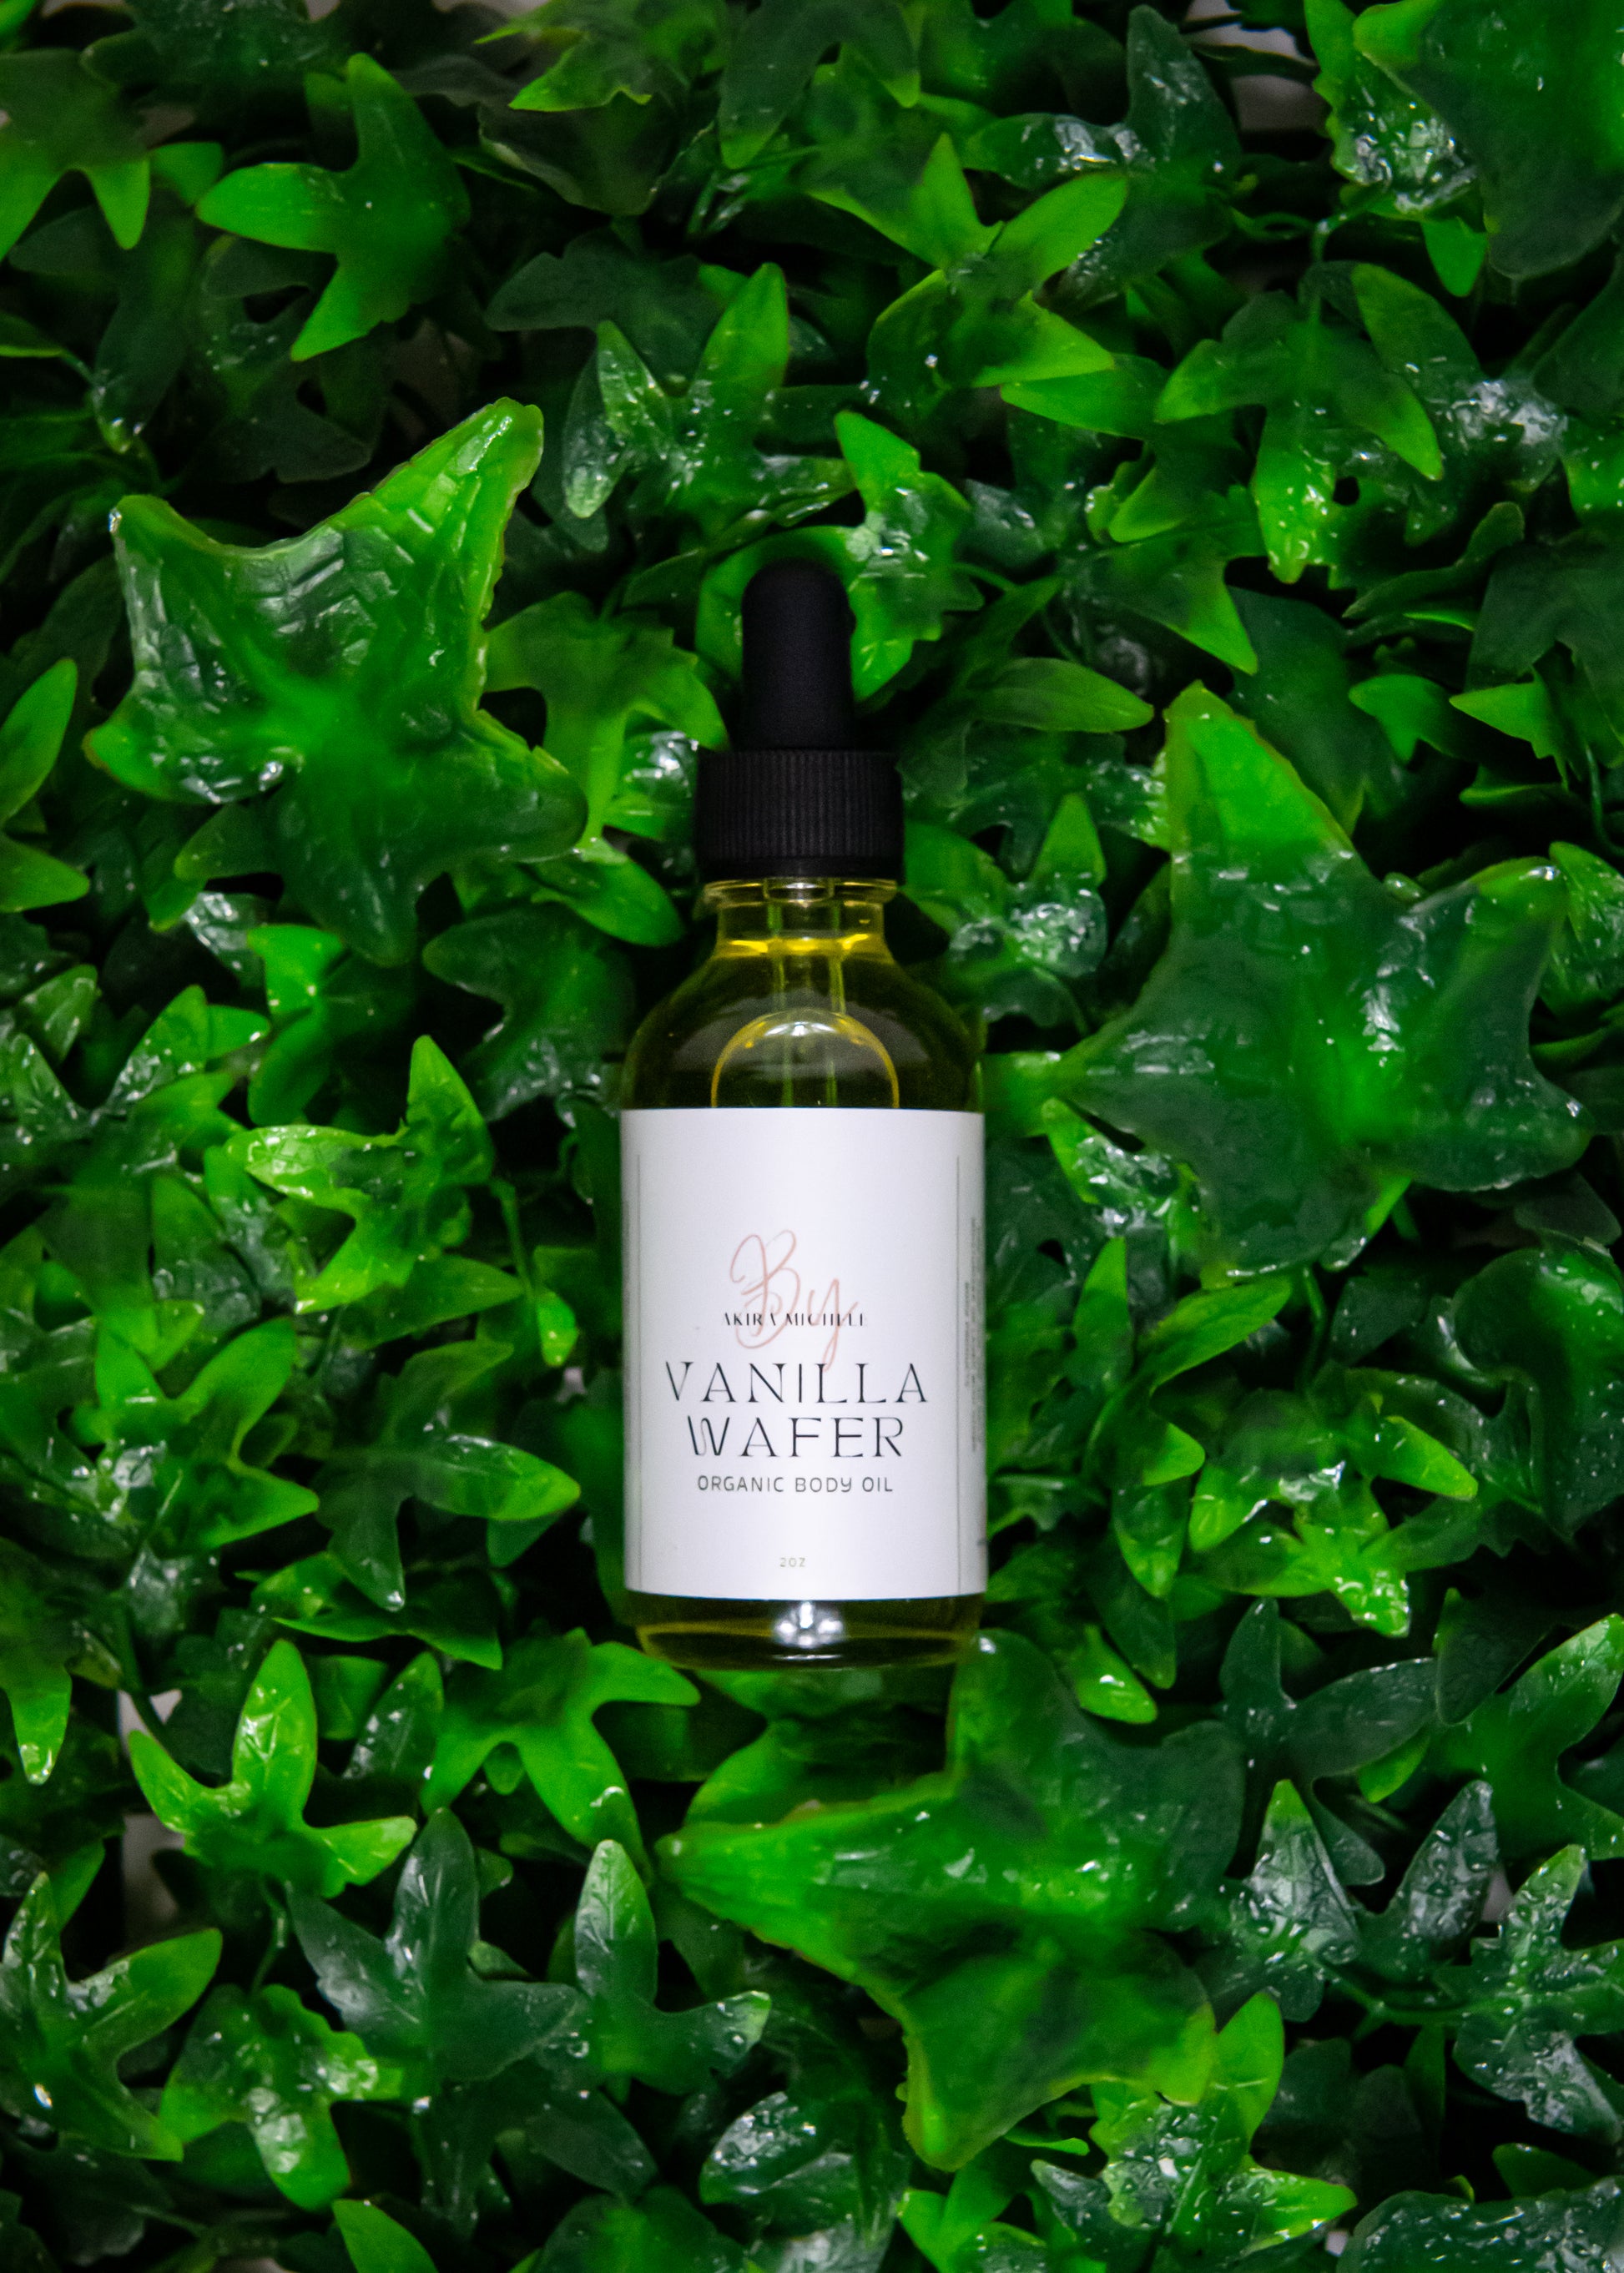 Vanilla Organic Body Oil